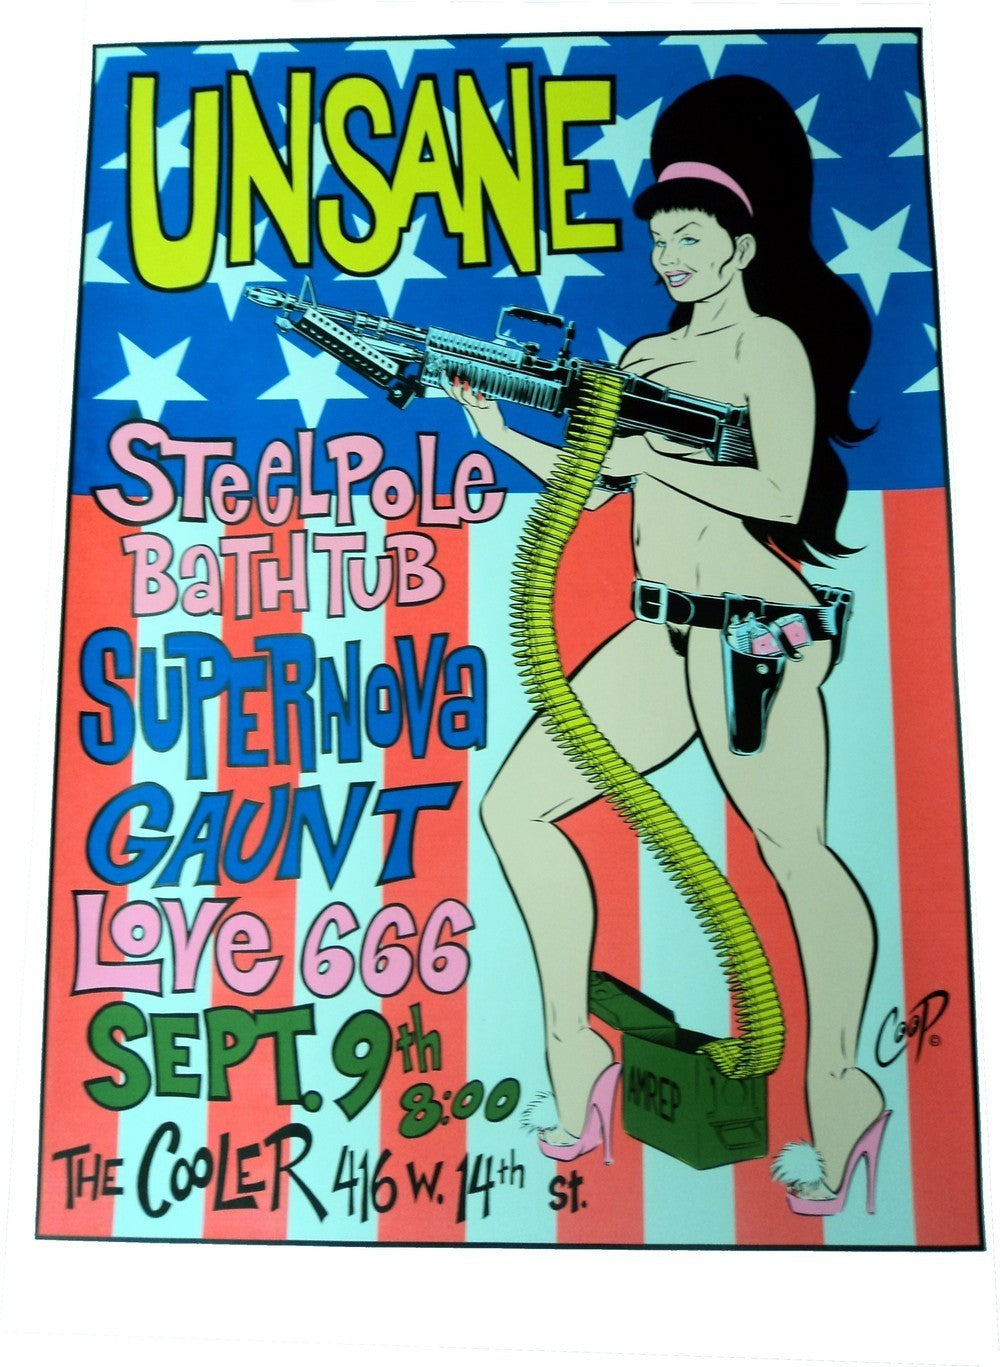 Coop - 1995 - Unsane Concert Poster